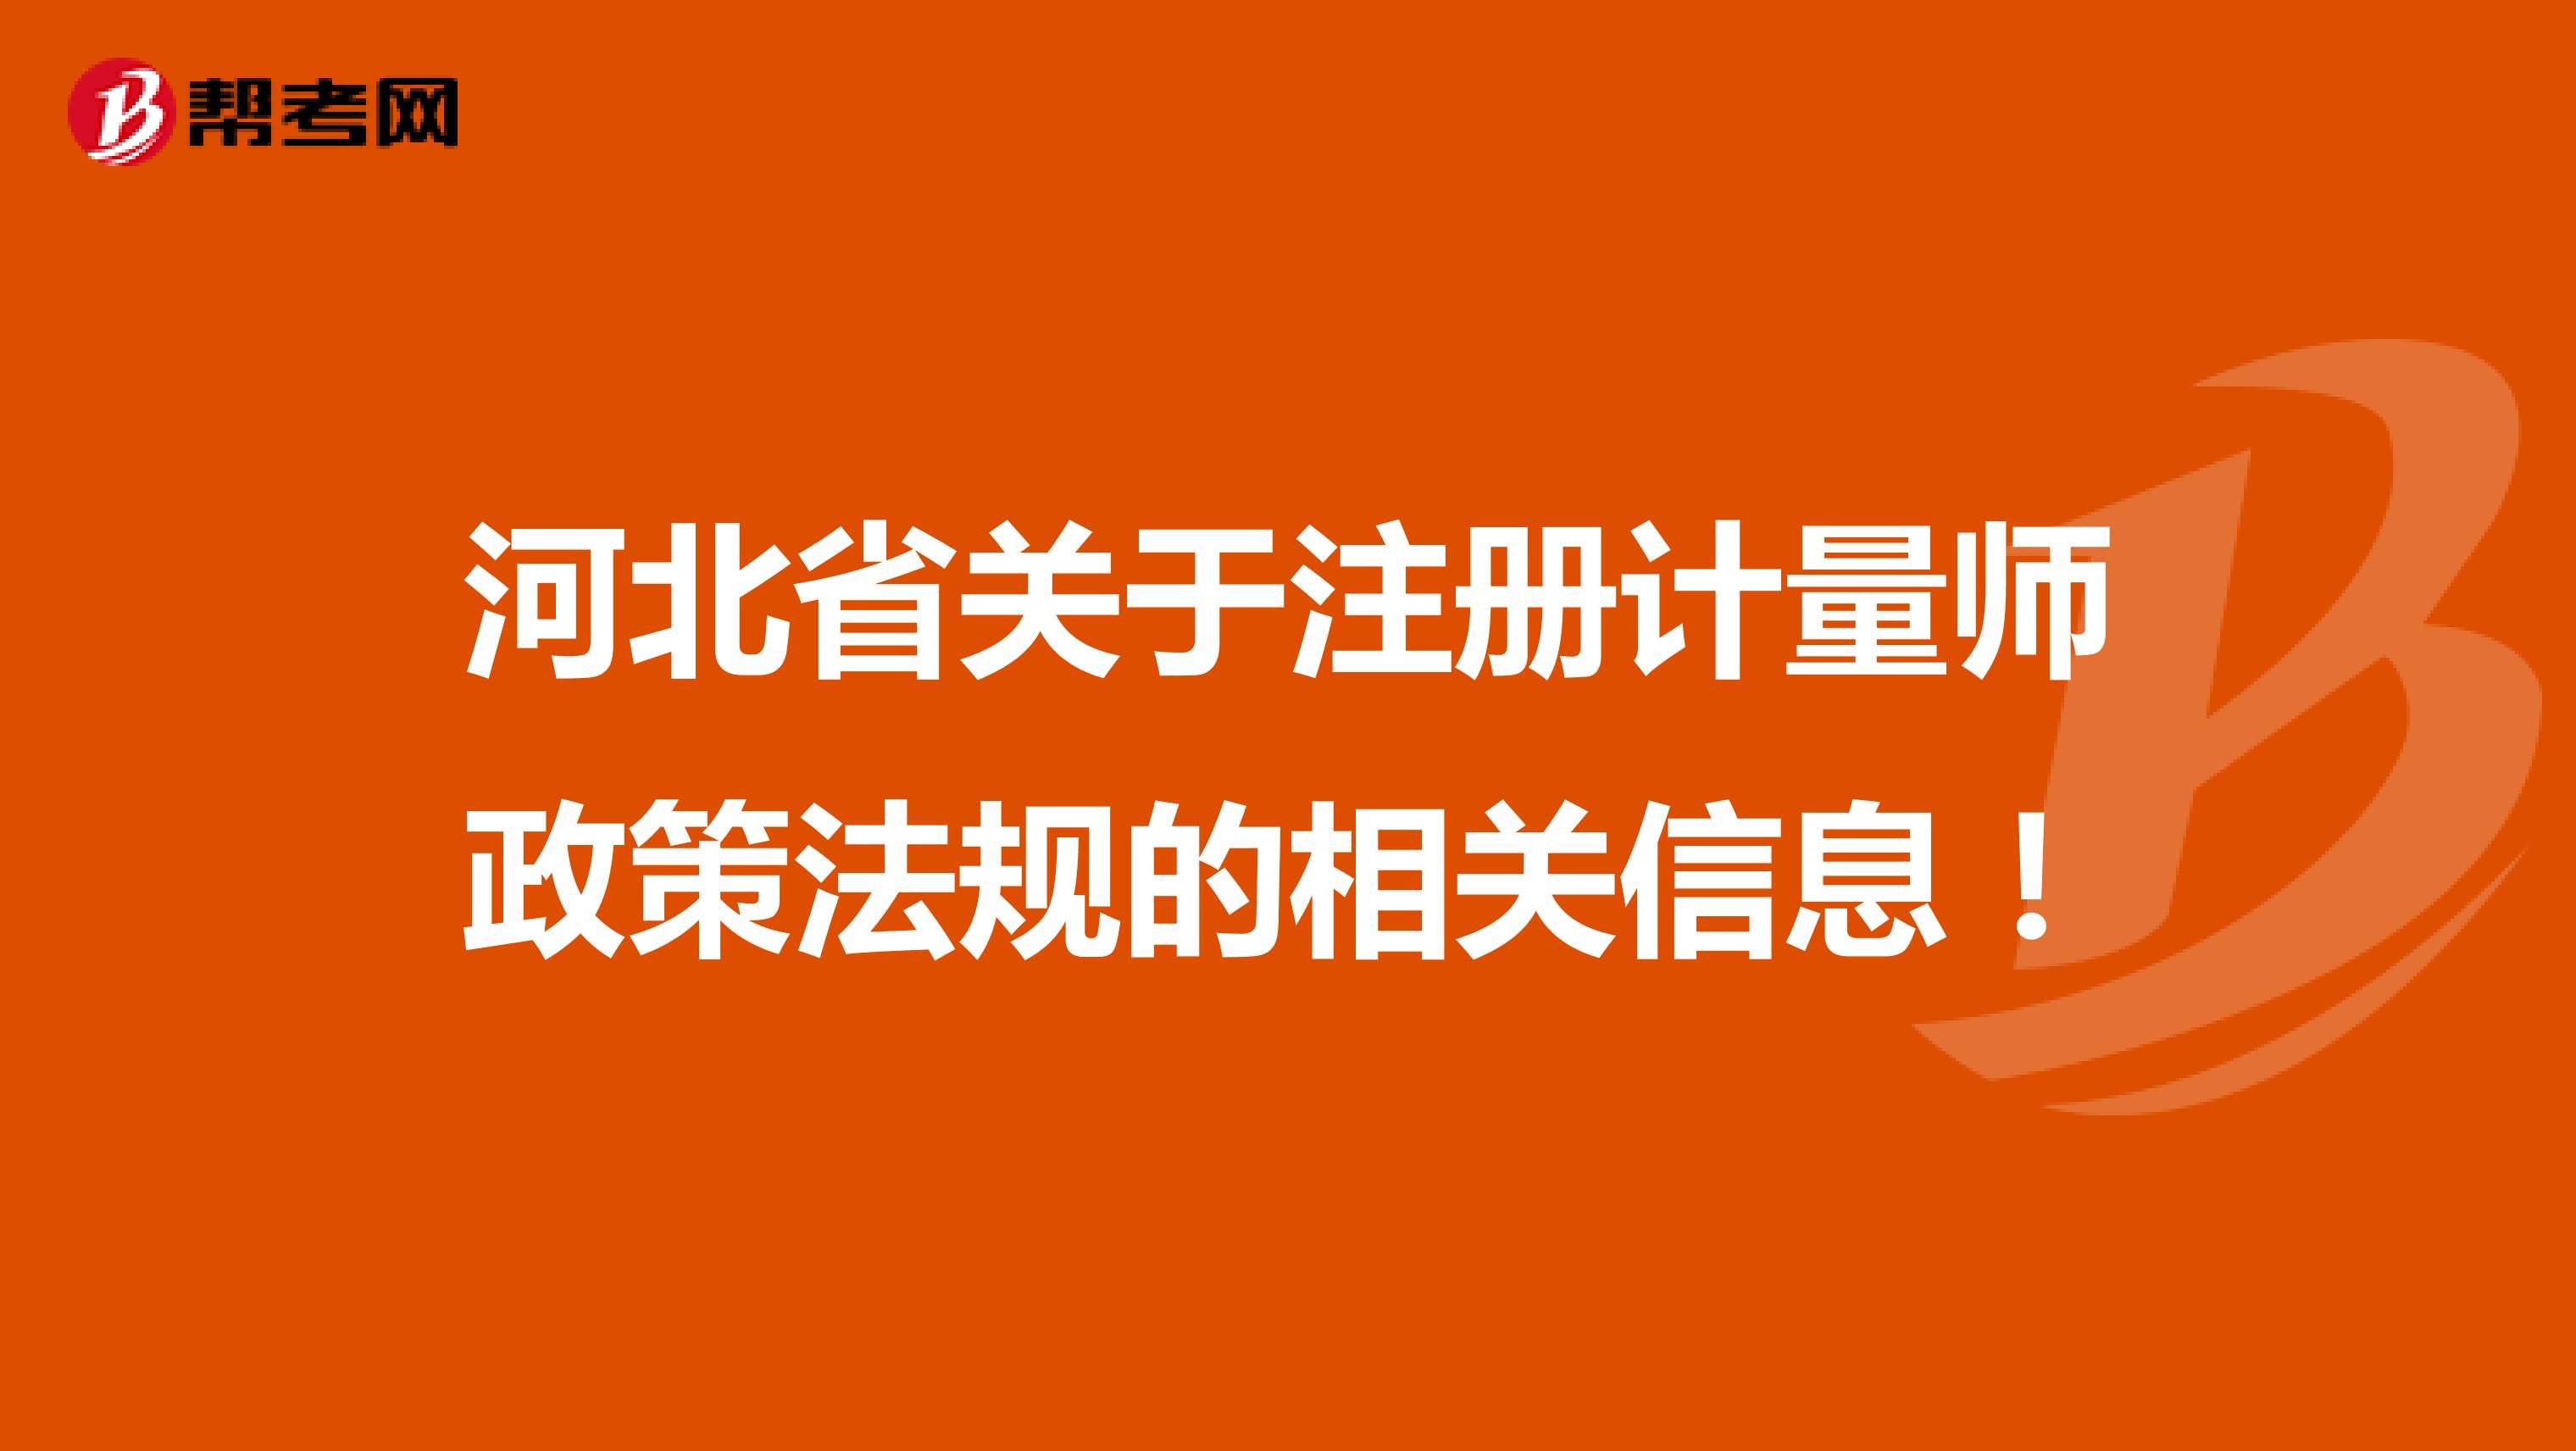  河北省关于注册计量师政策法规的相关信息！